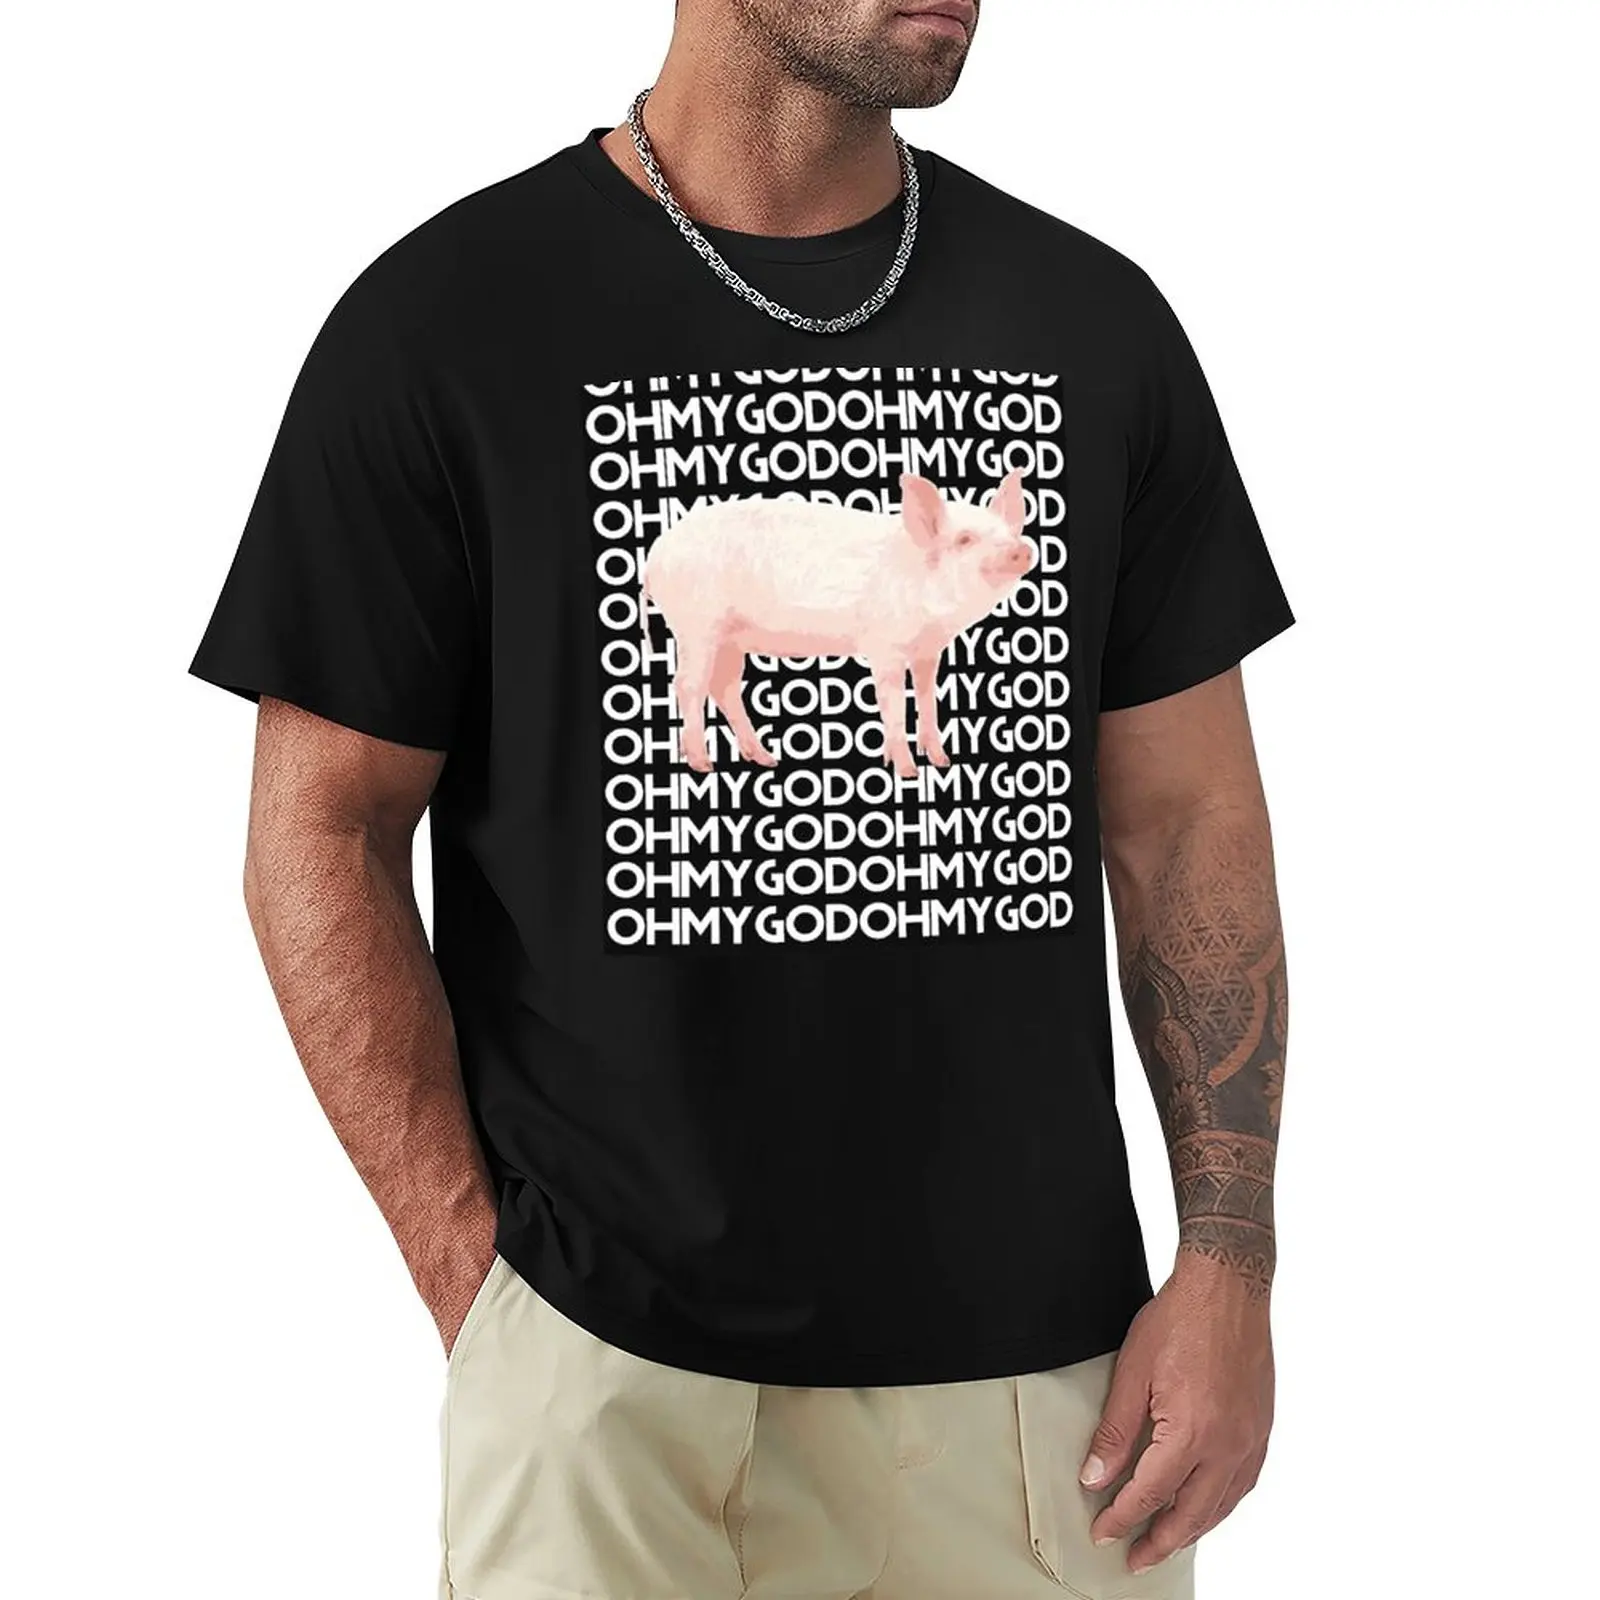 Футболка Шейн Доусон свинка О мой Бог футболка оверсайз s забавная футболка  свиная футболка графическая футболка черные футболки для мужчин | AliExpress